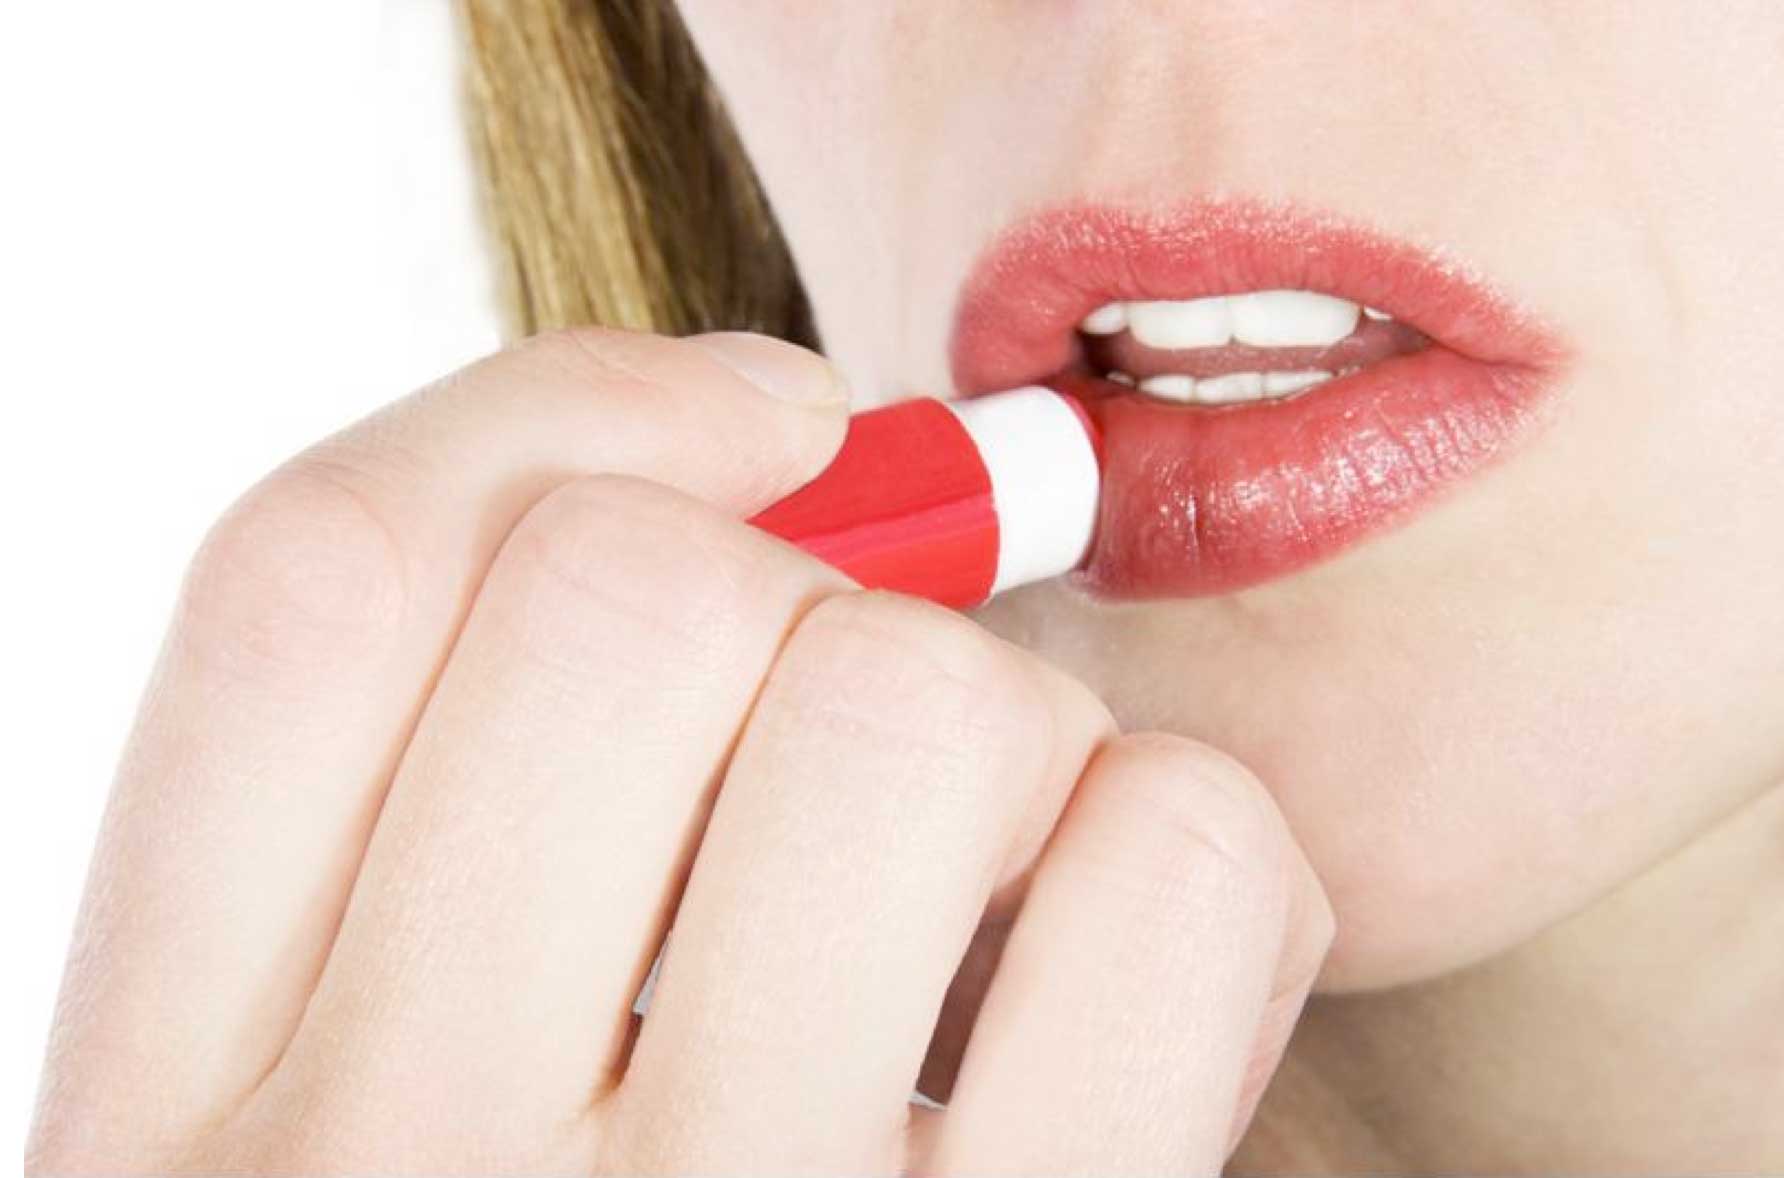 woman putting on lipstick